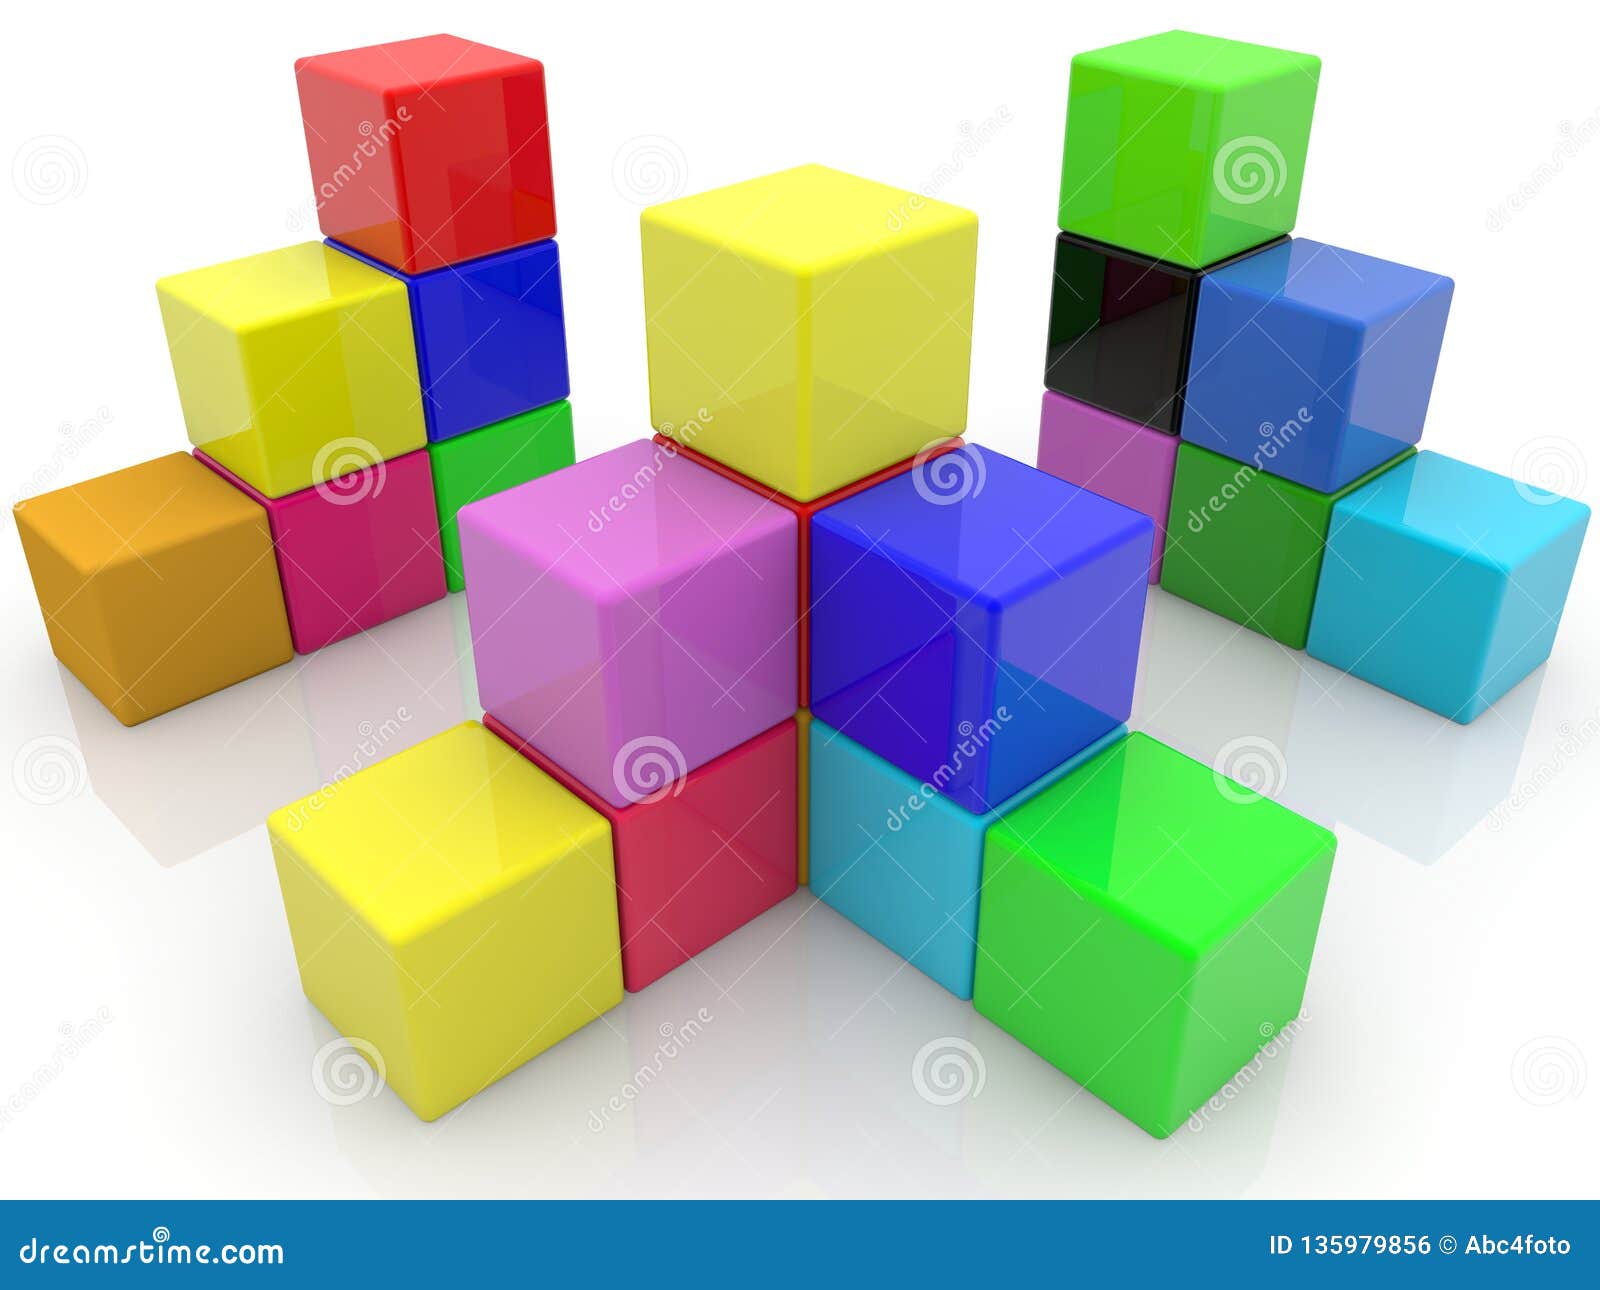 Construcciones Apiladas De Los Cubos Del Diversos Colores Stock de ilustración - Ilustración de idea: 135979856